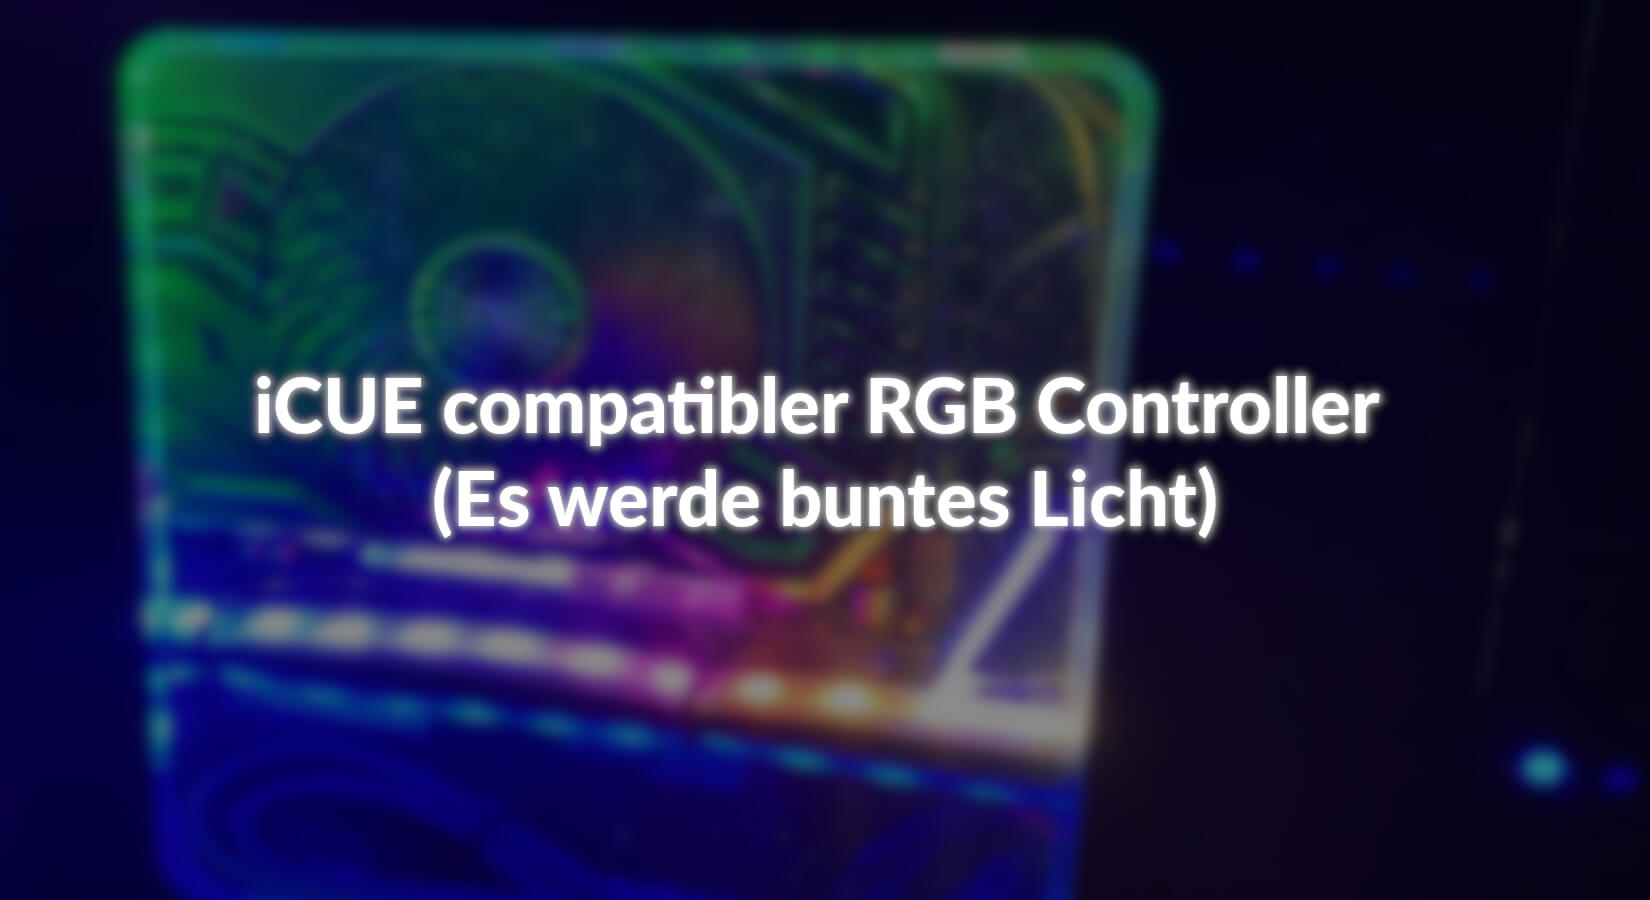 iCUE compatibler RGB Controller (Es werde buntes Licht) - AZ-Delivery